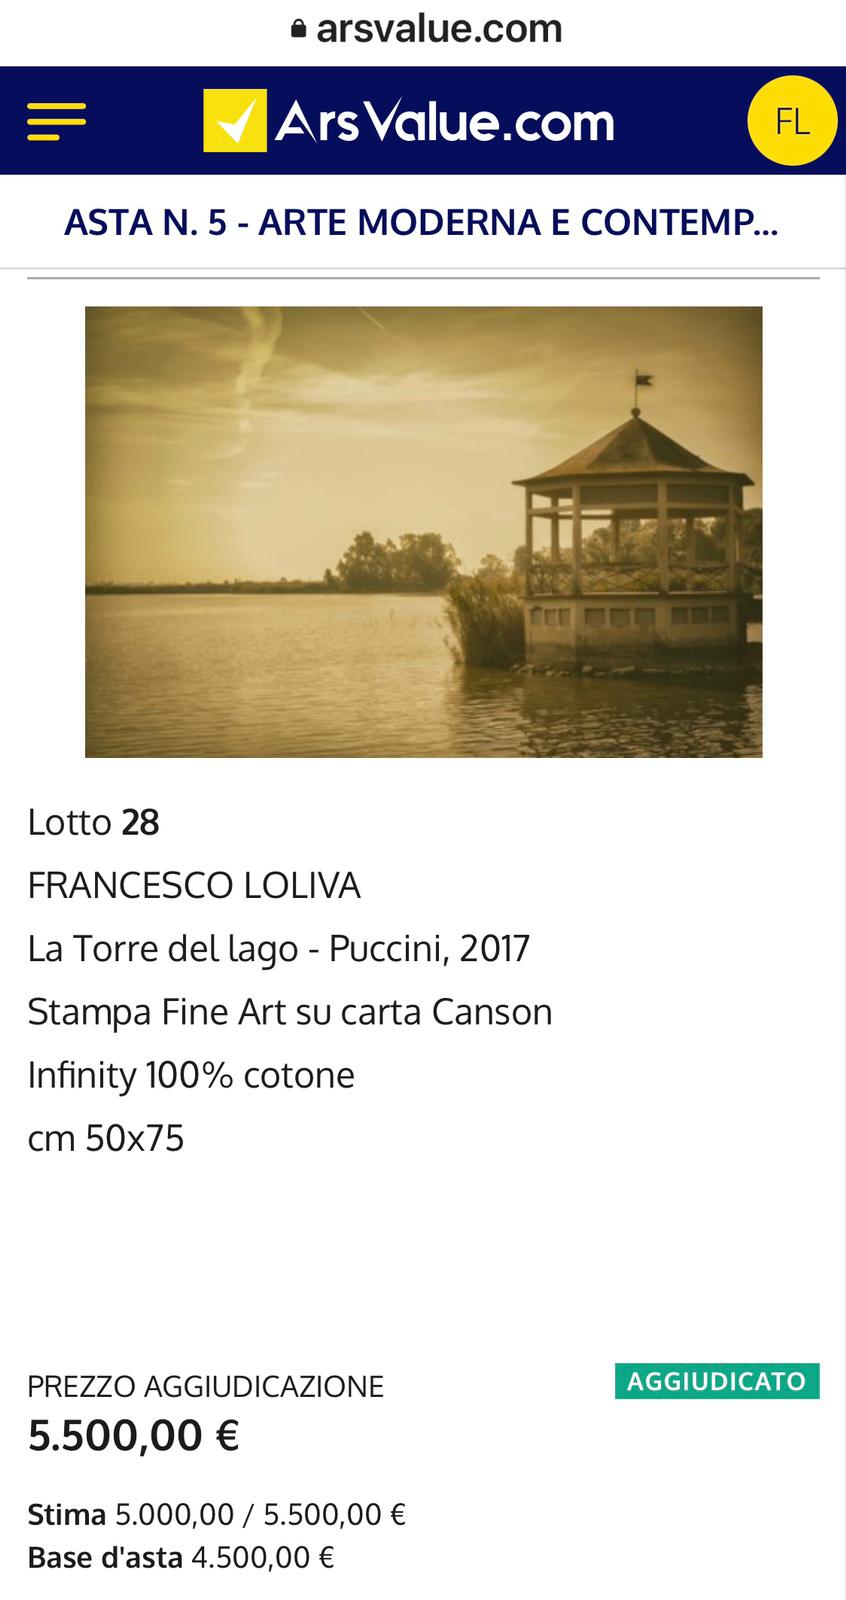 GENNAIO 2021 - https://www.arsvalue.com/it/lotti/540905/francesco-loliva-la-torre-del-lago-puccini-2017?nav=True